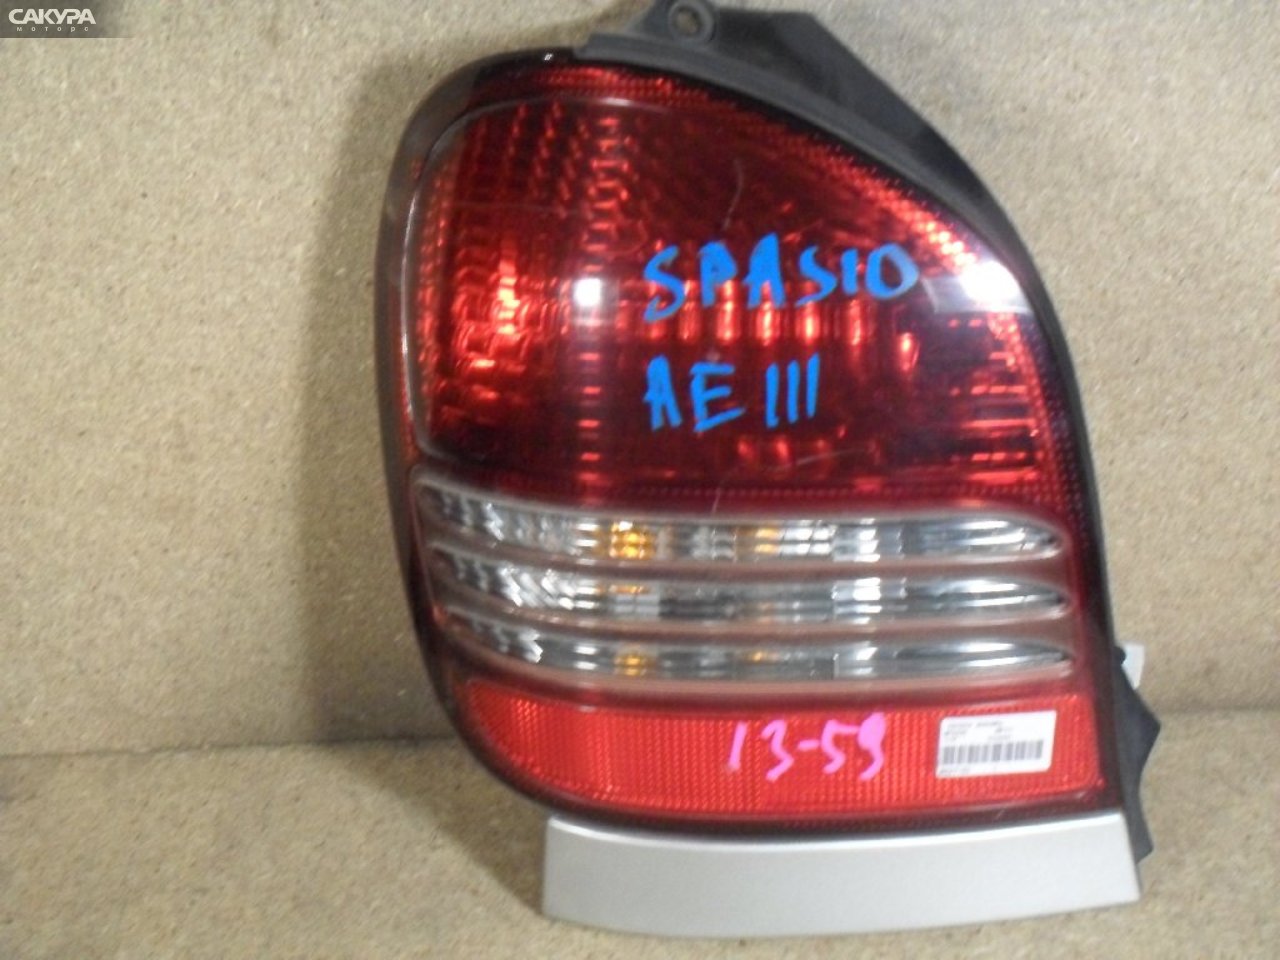 Фонарь стоп-сигнала левый Toyota Corolla Spacio AE111N 13-59: купить в Сакура Абакан.